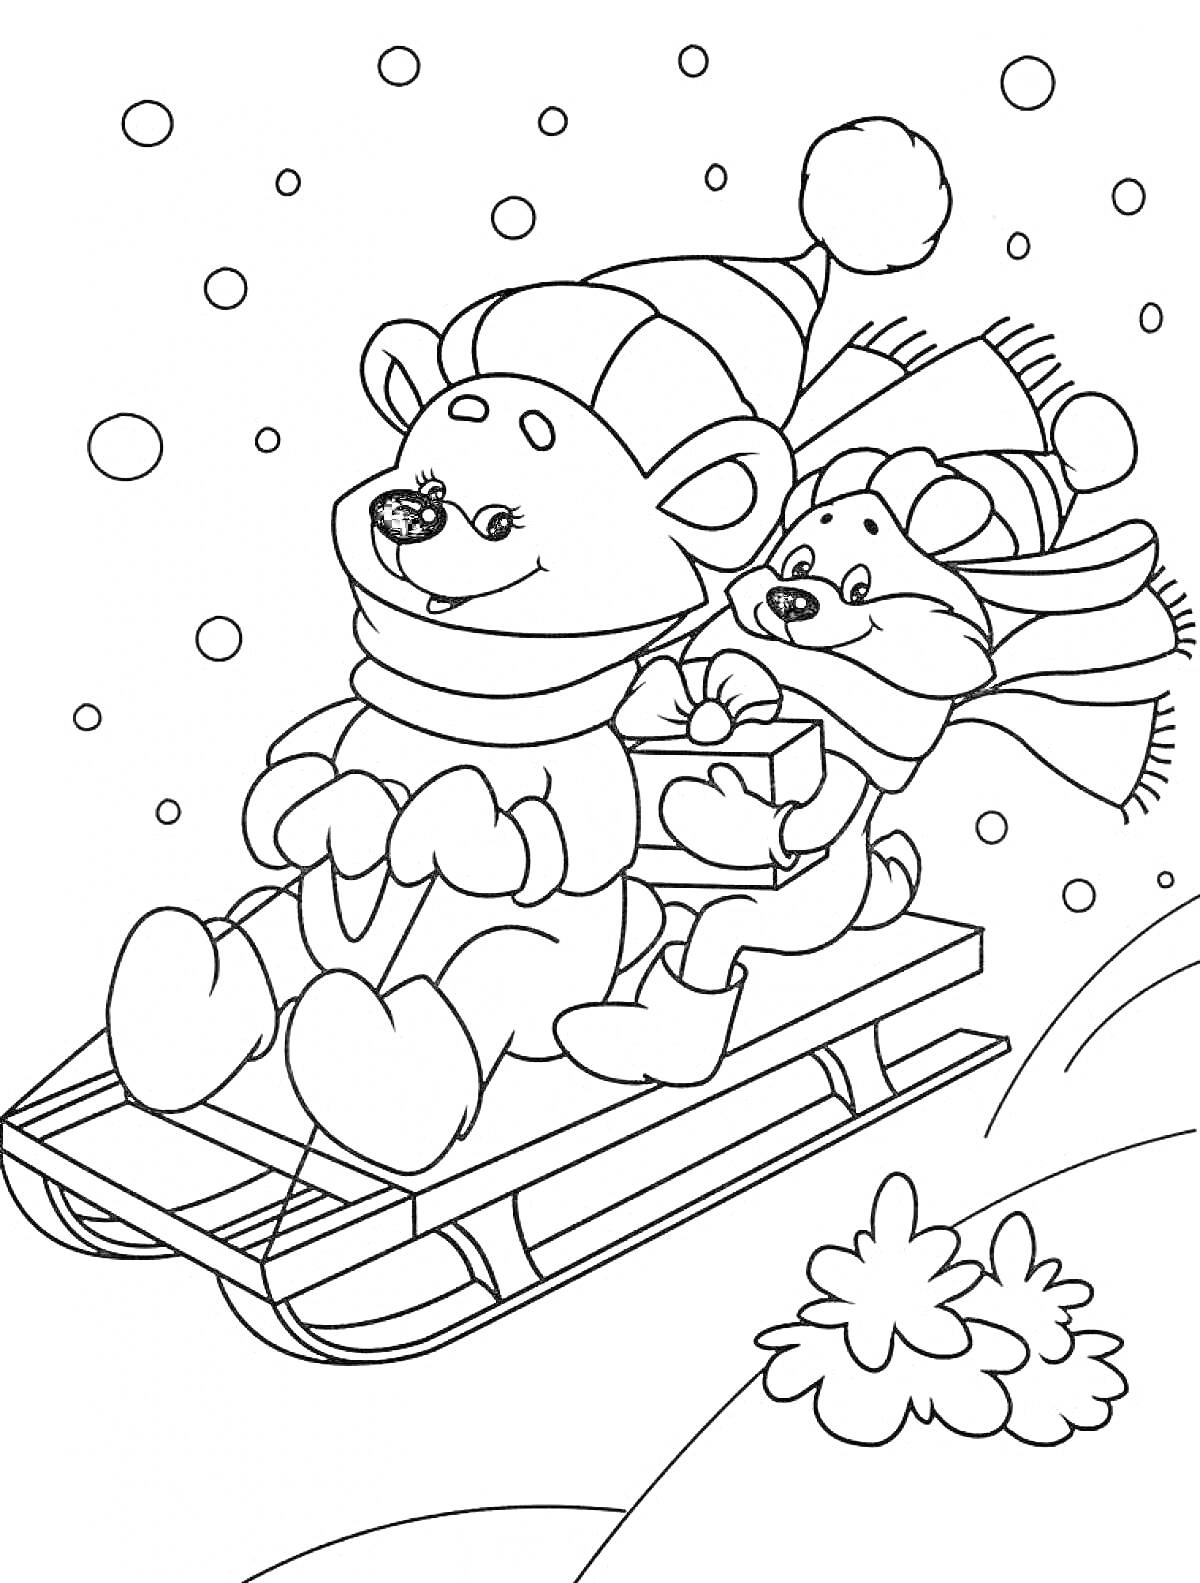 Раскраска Медведь и лисенок на санках в снежный день